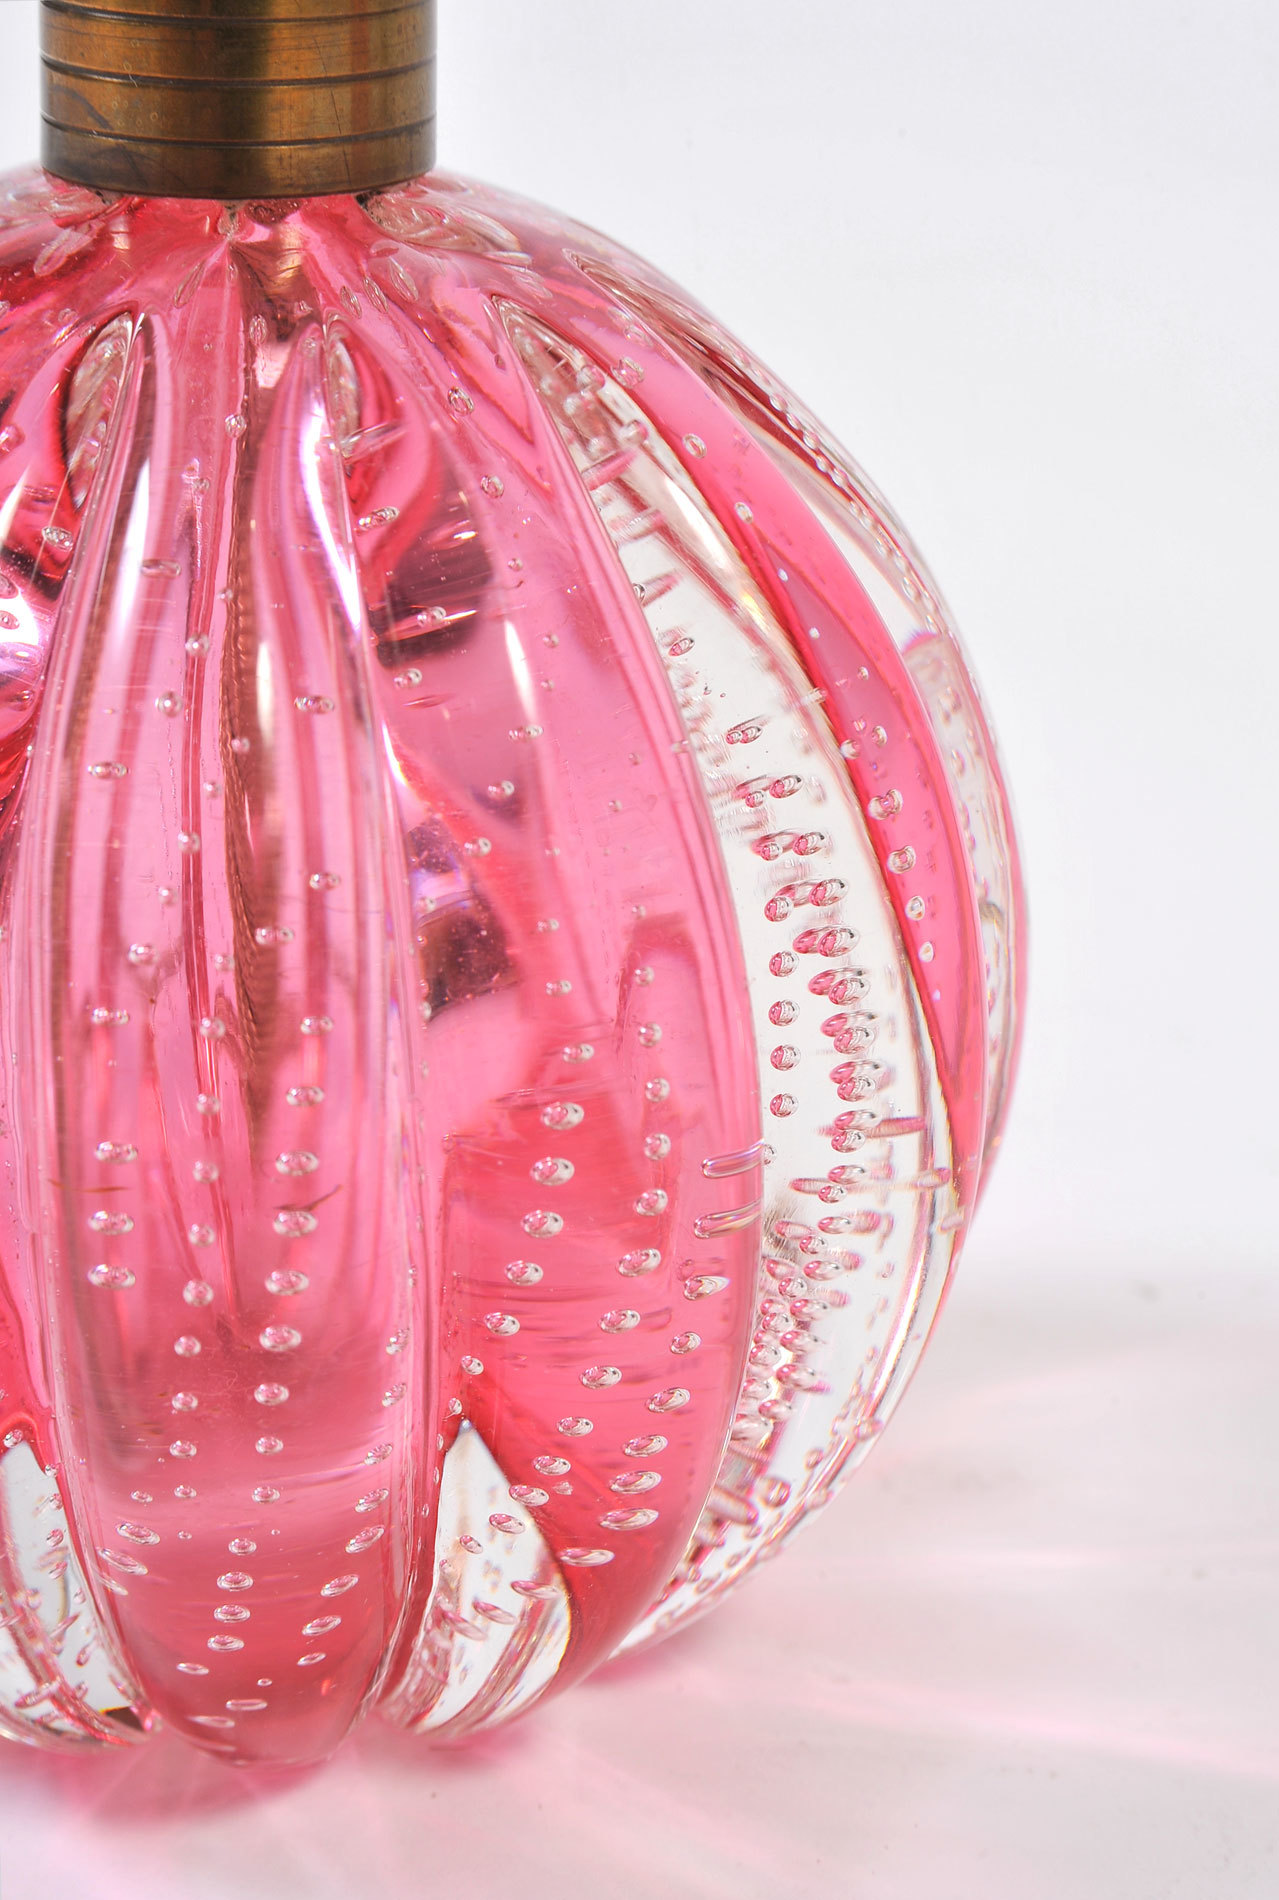 Pair Pink Murano Ball Lamps 03